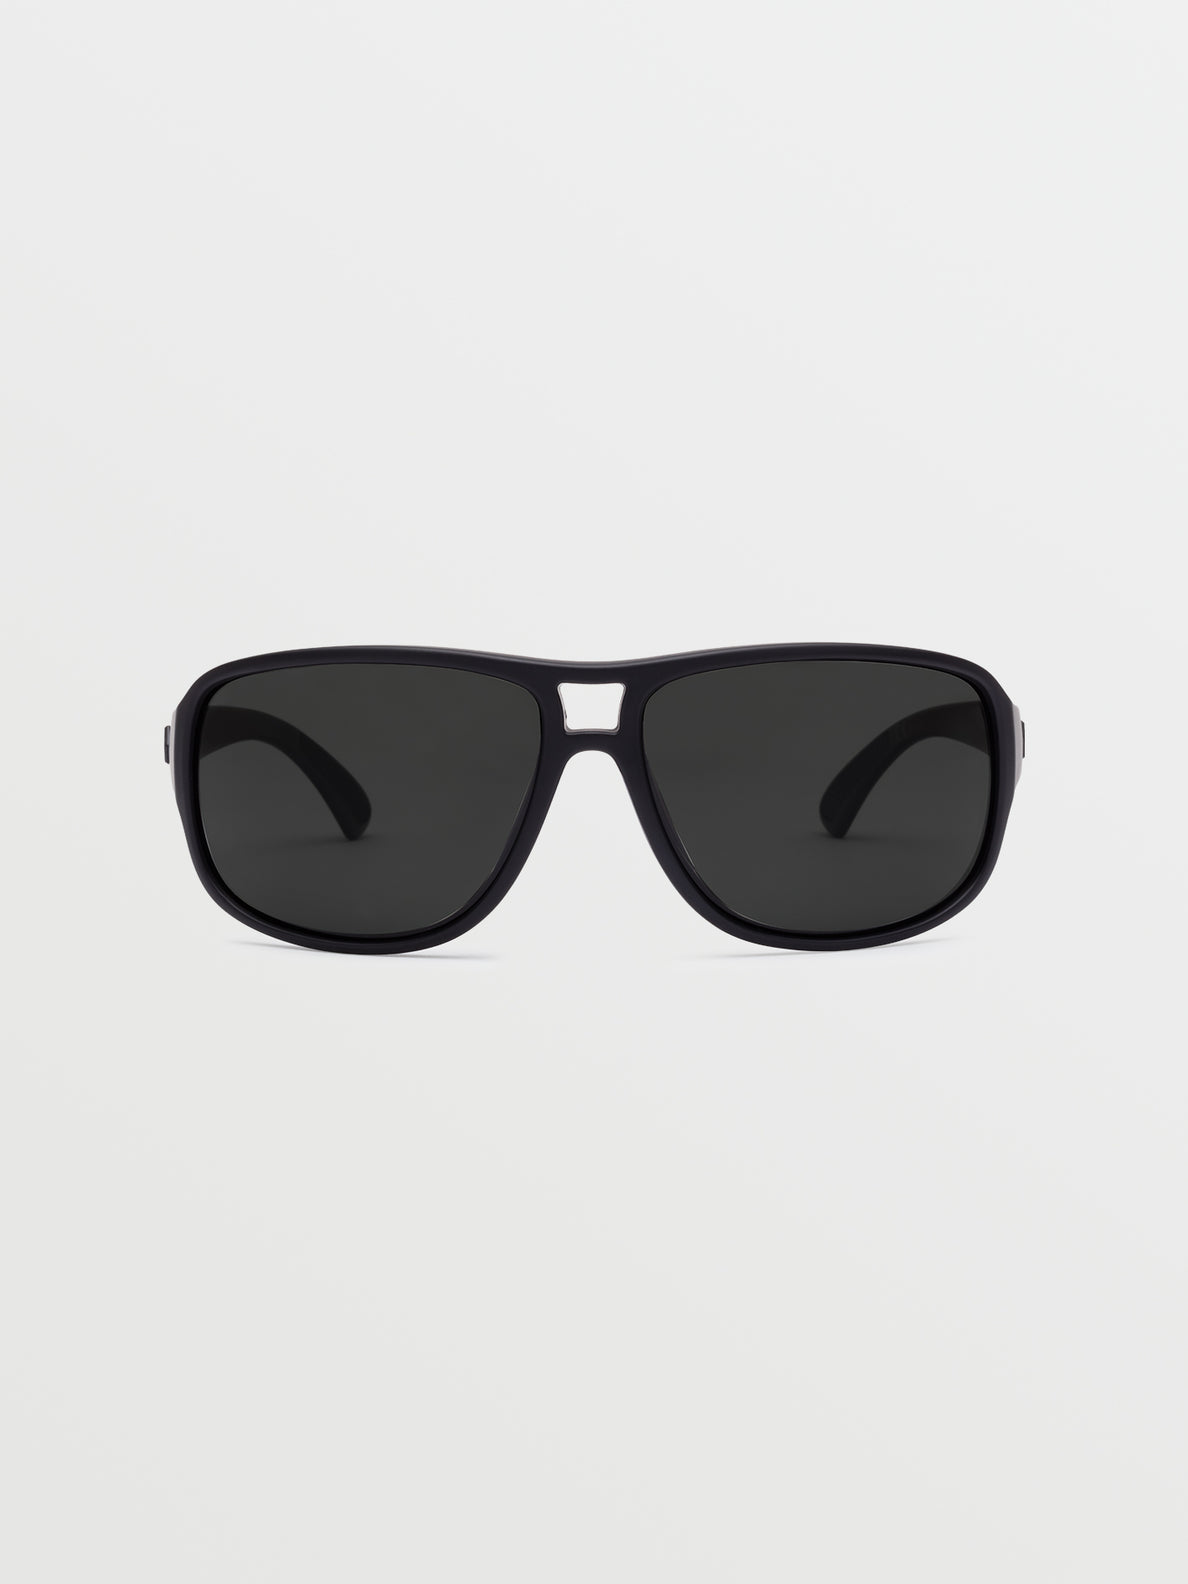 Stoke Sunglasses - Matte Black/Gray Polar (VE00500102_0000) [2]